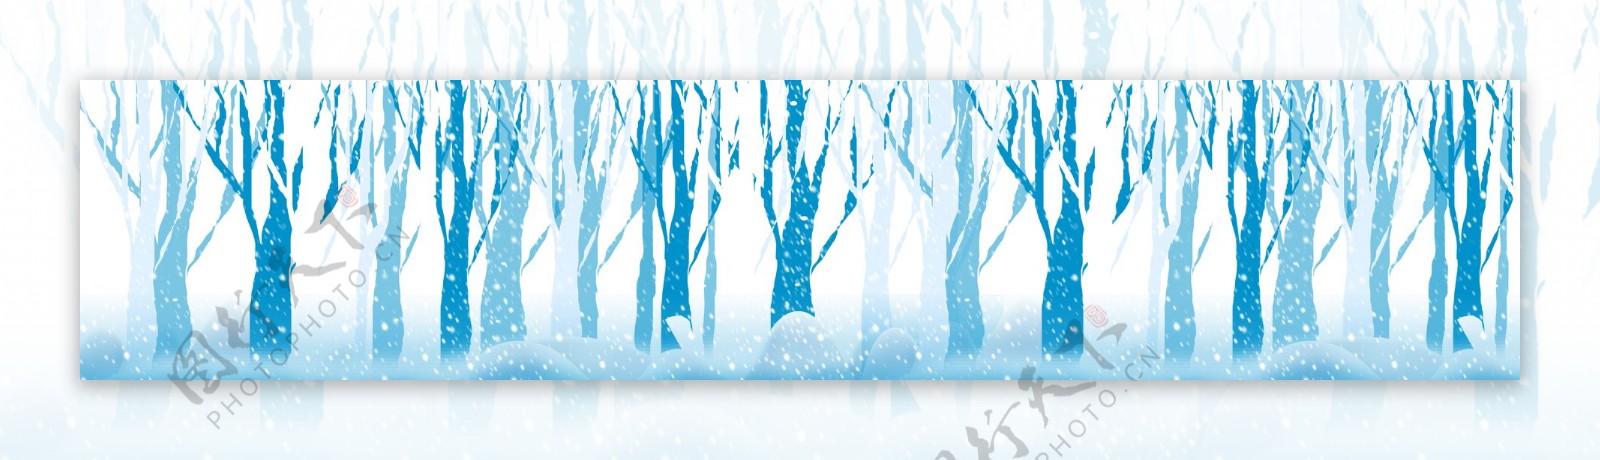 雪中的树背景素材122